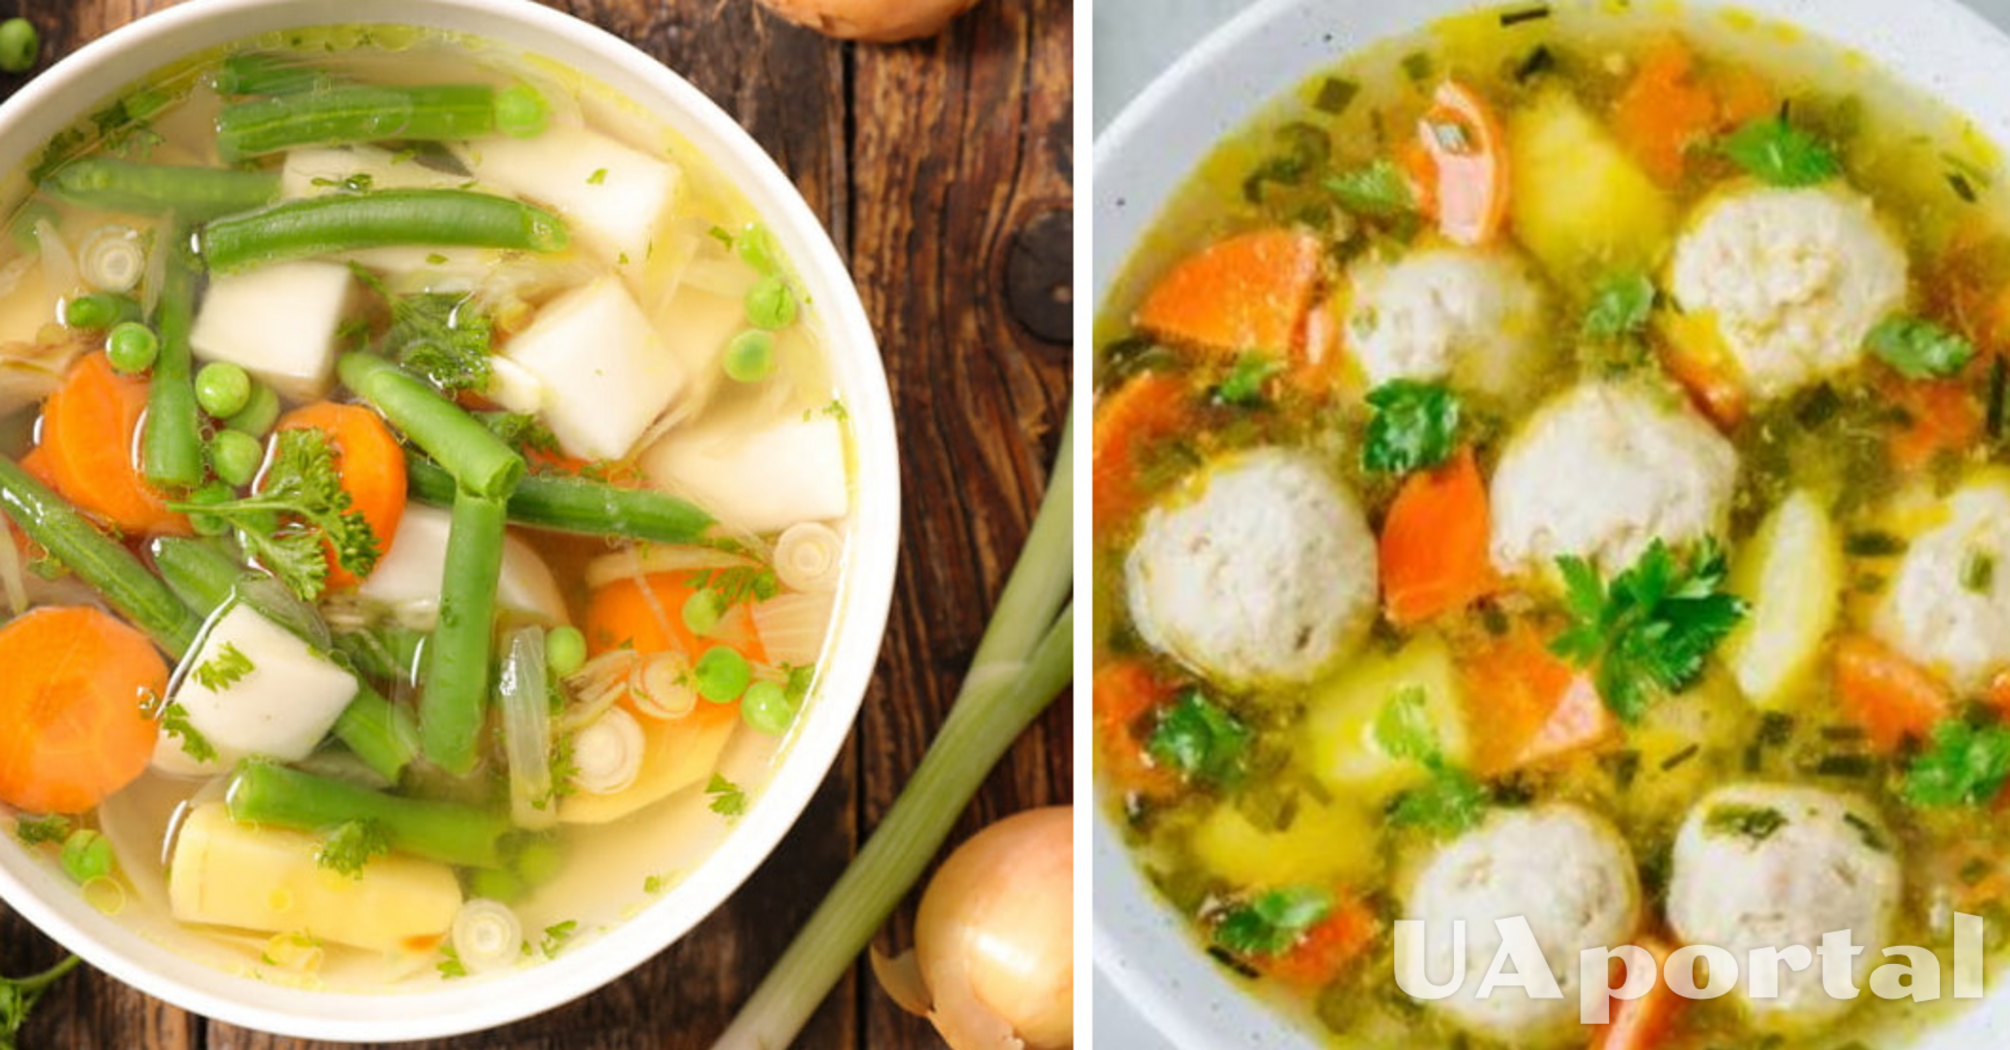 Прекрасно согревает в зимние вечера: рецепт супа с брюссельской капустой и фрикадельками.